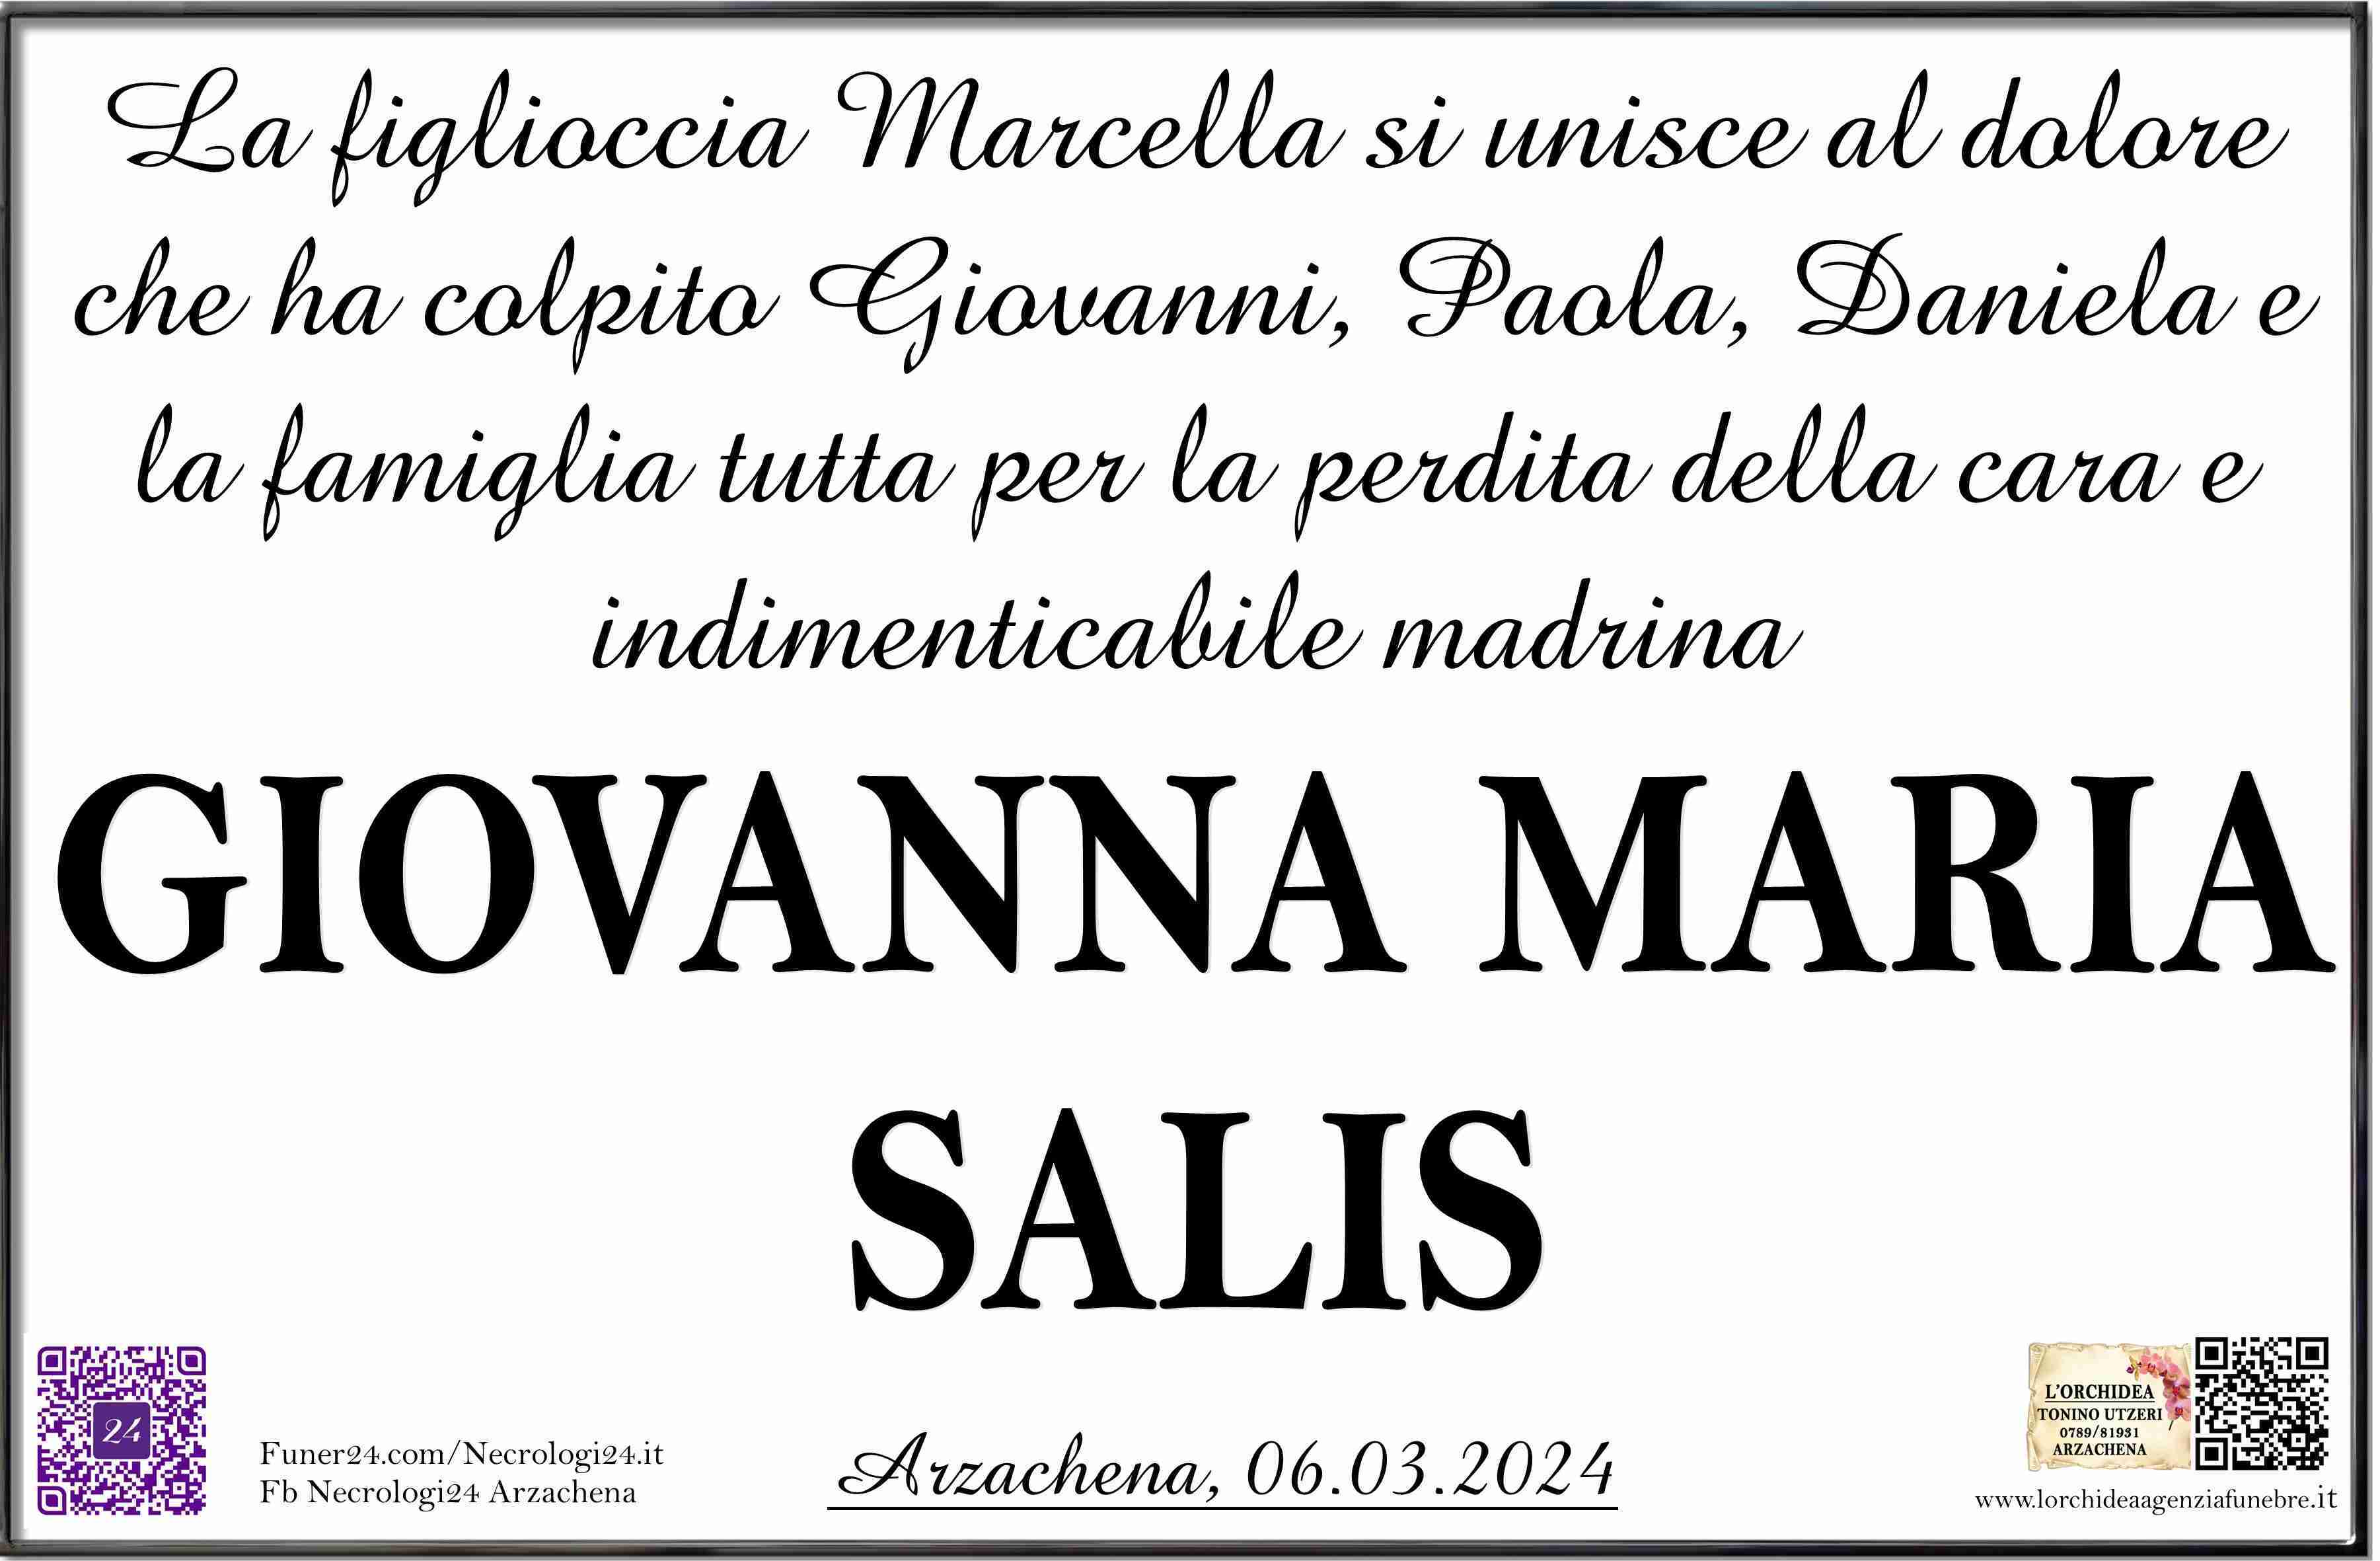 Giovanna Maria Salis